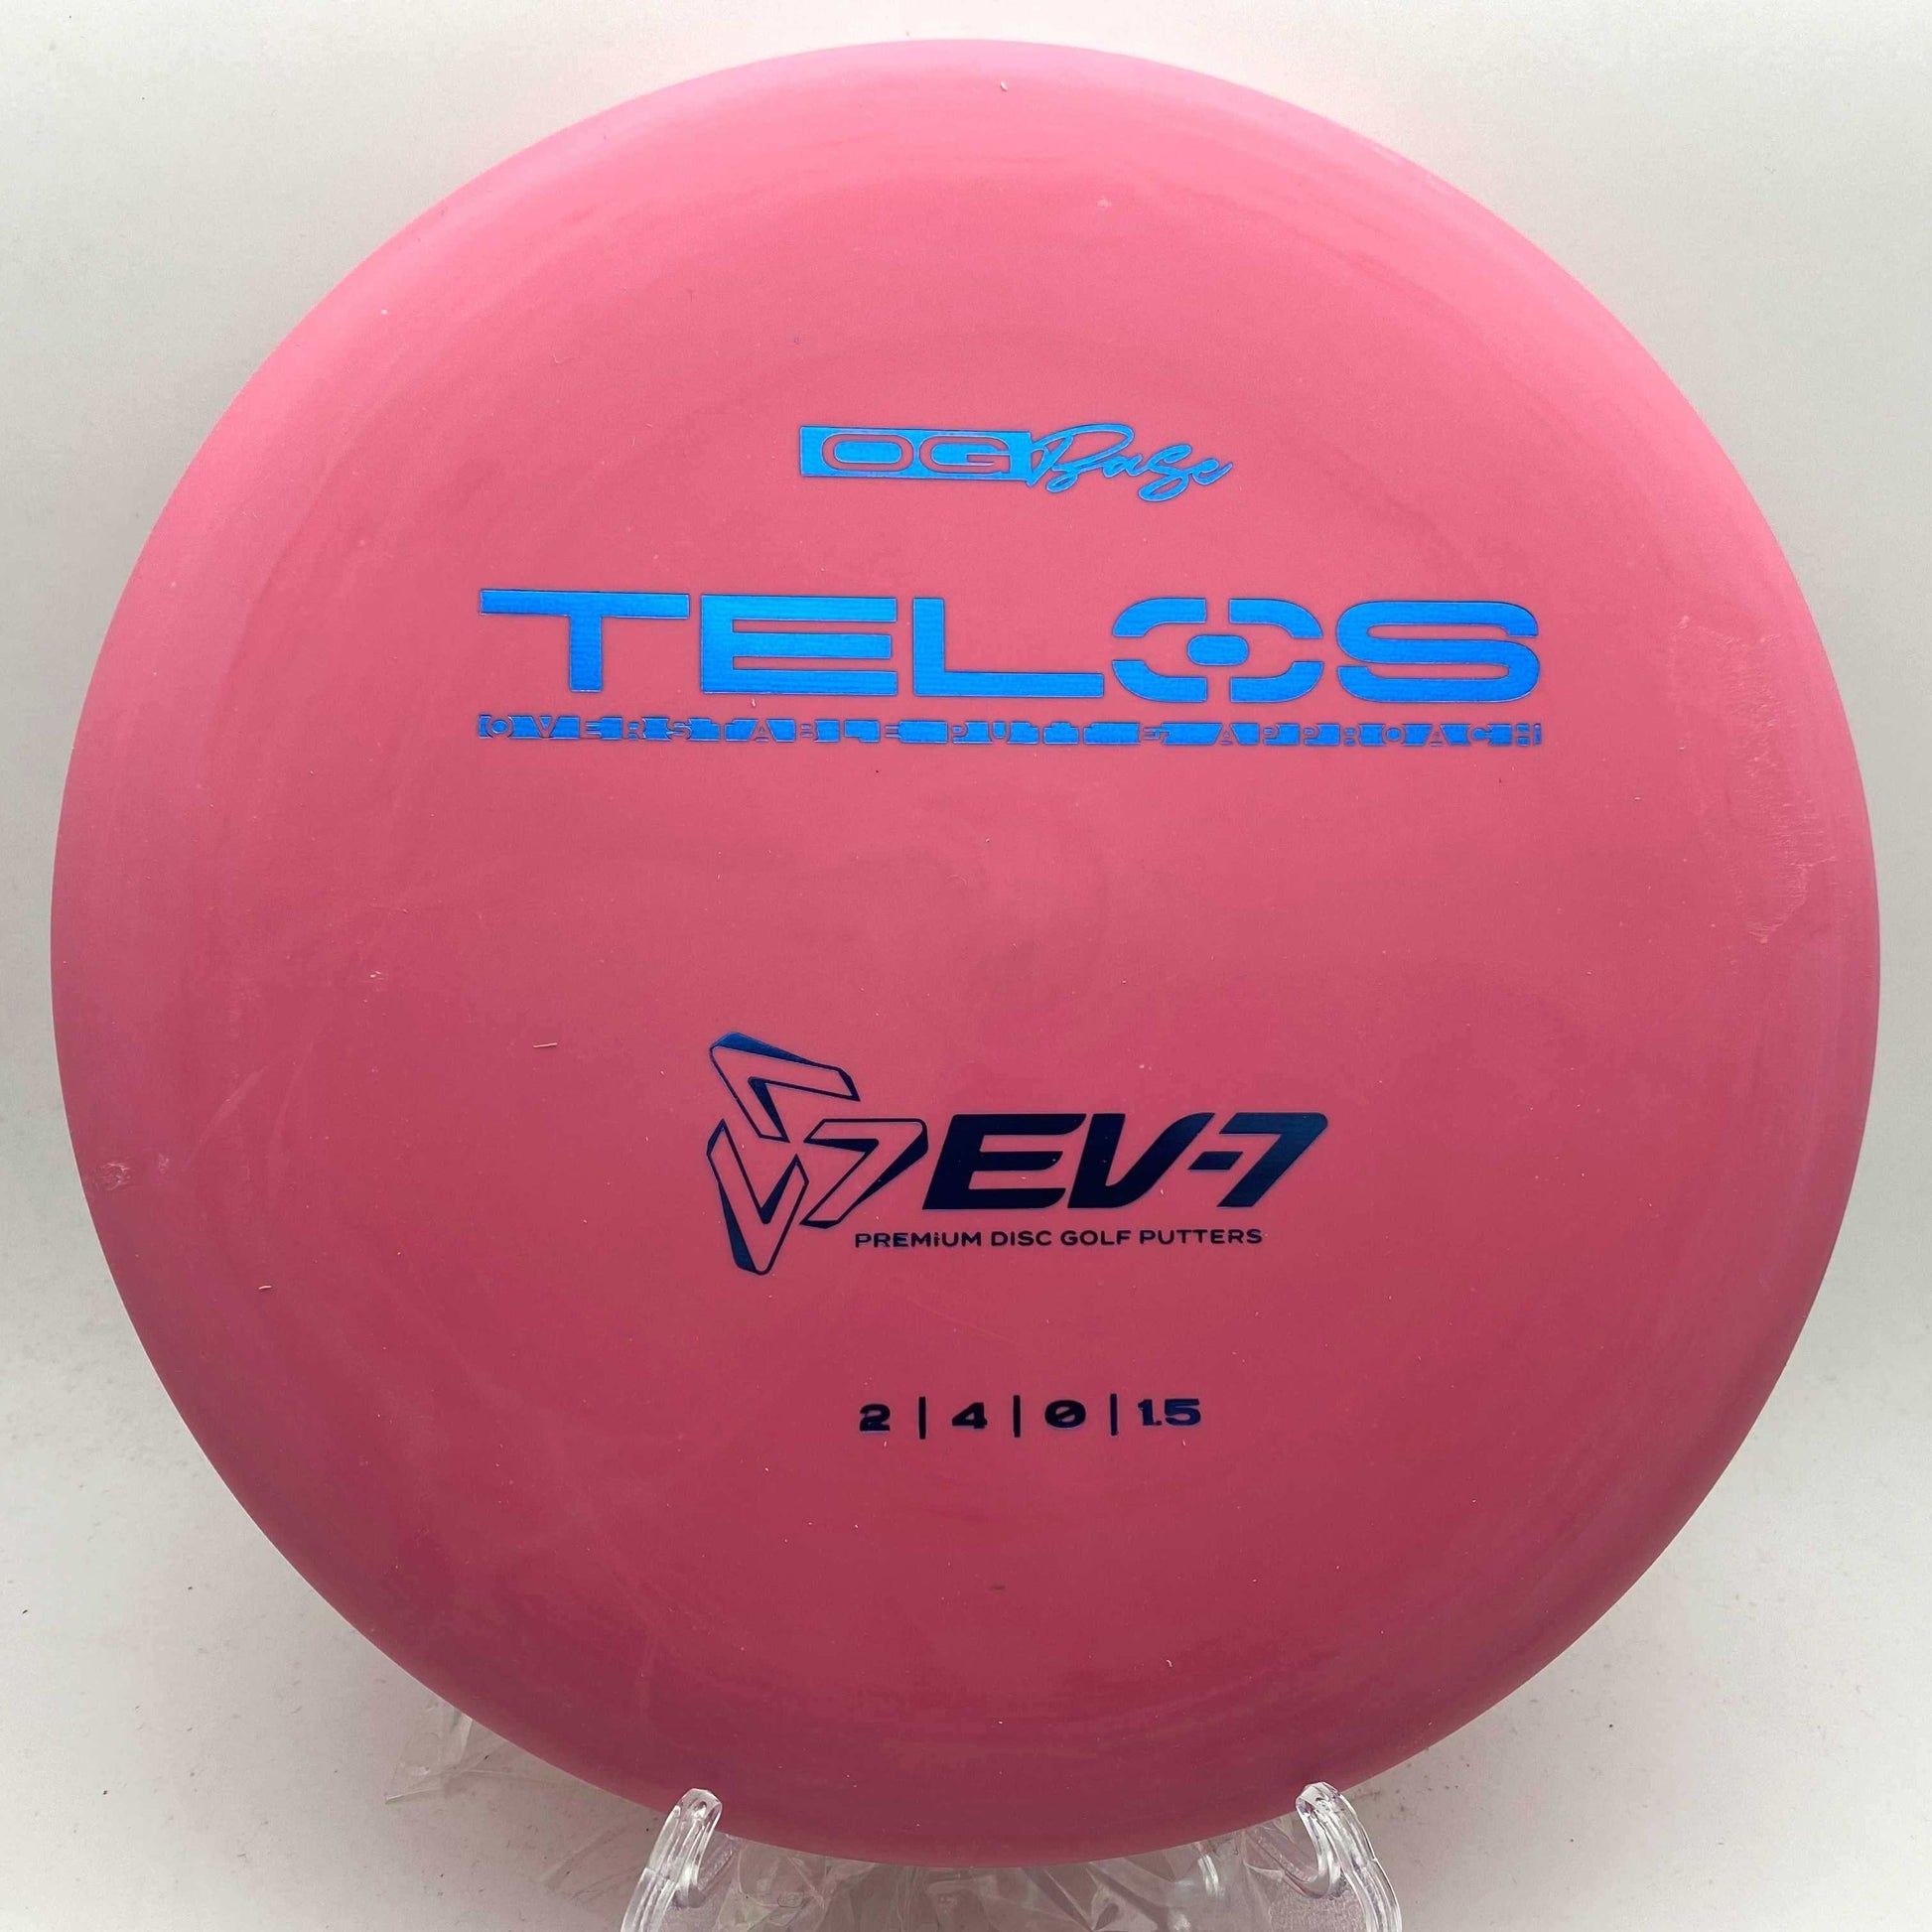 EV-7 Telos - Disc Golf Deals USA